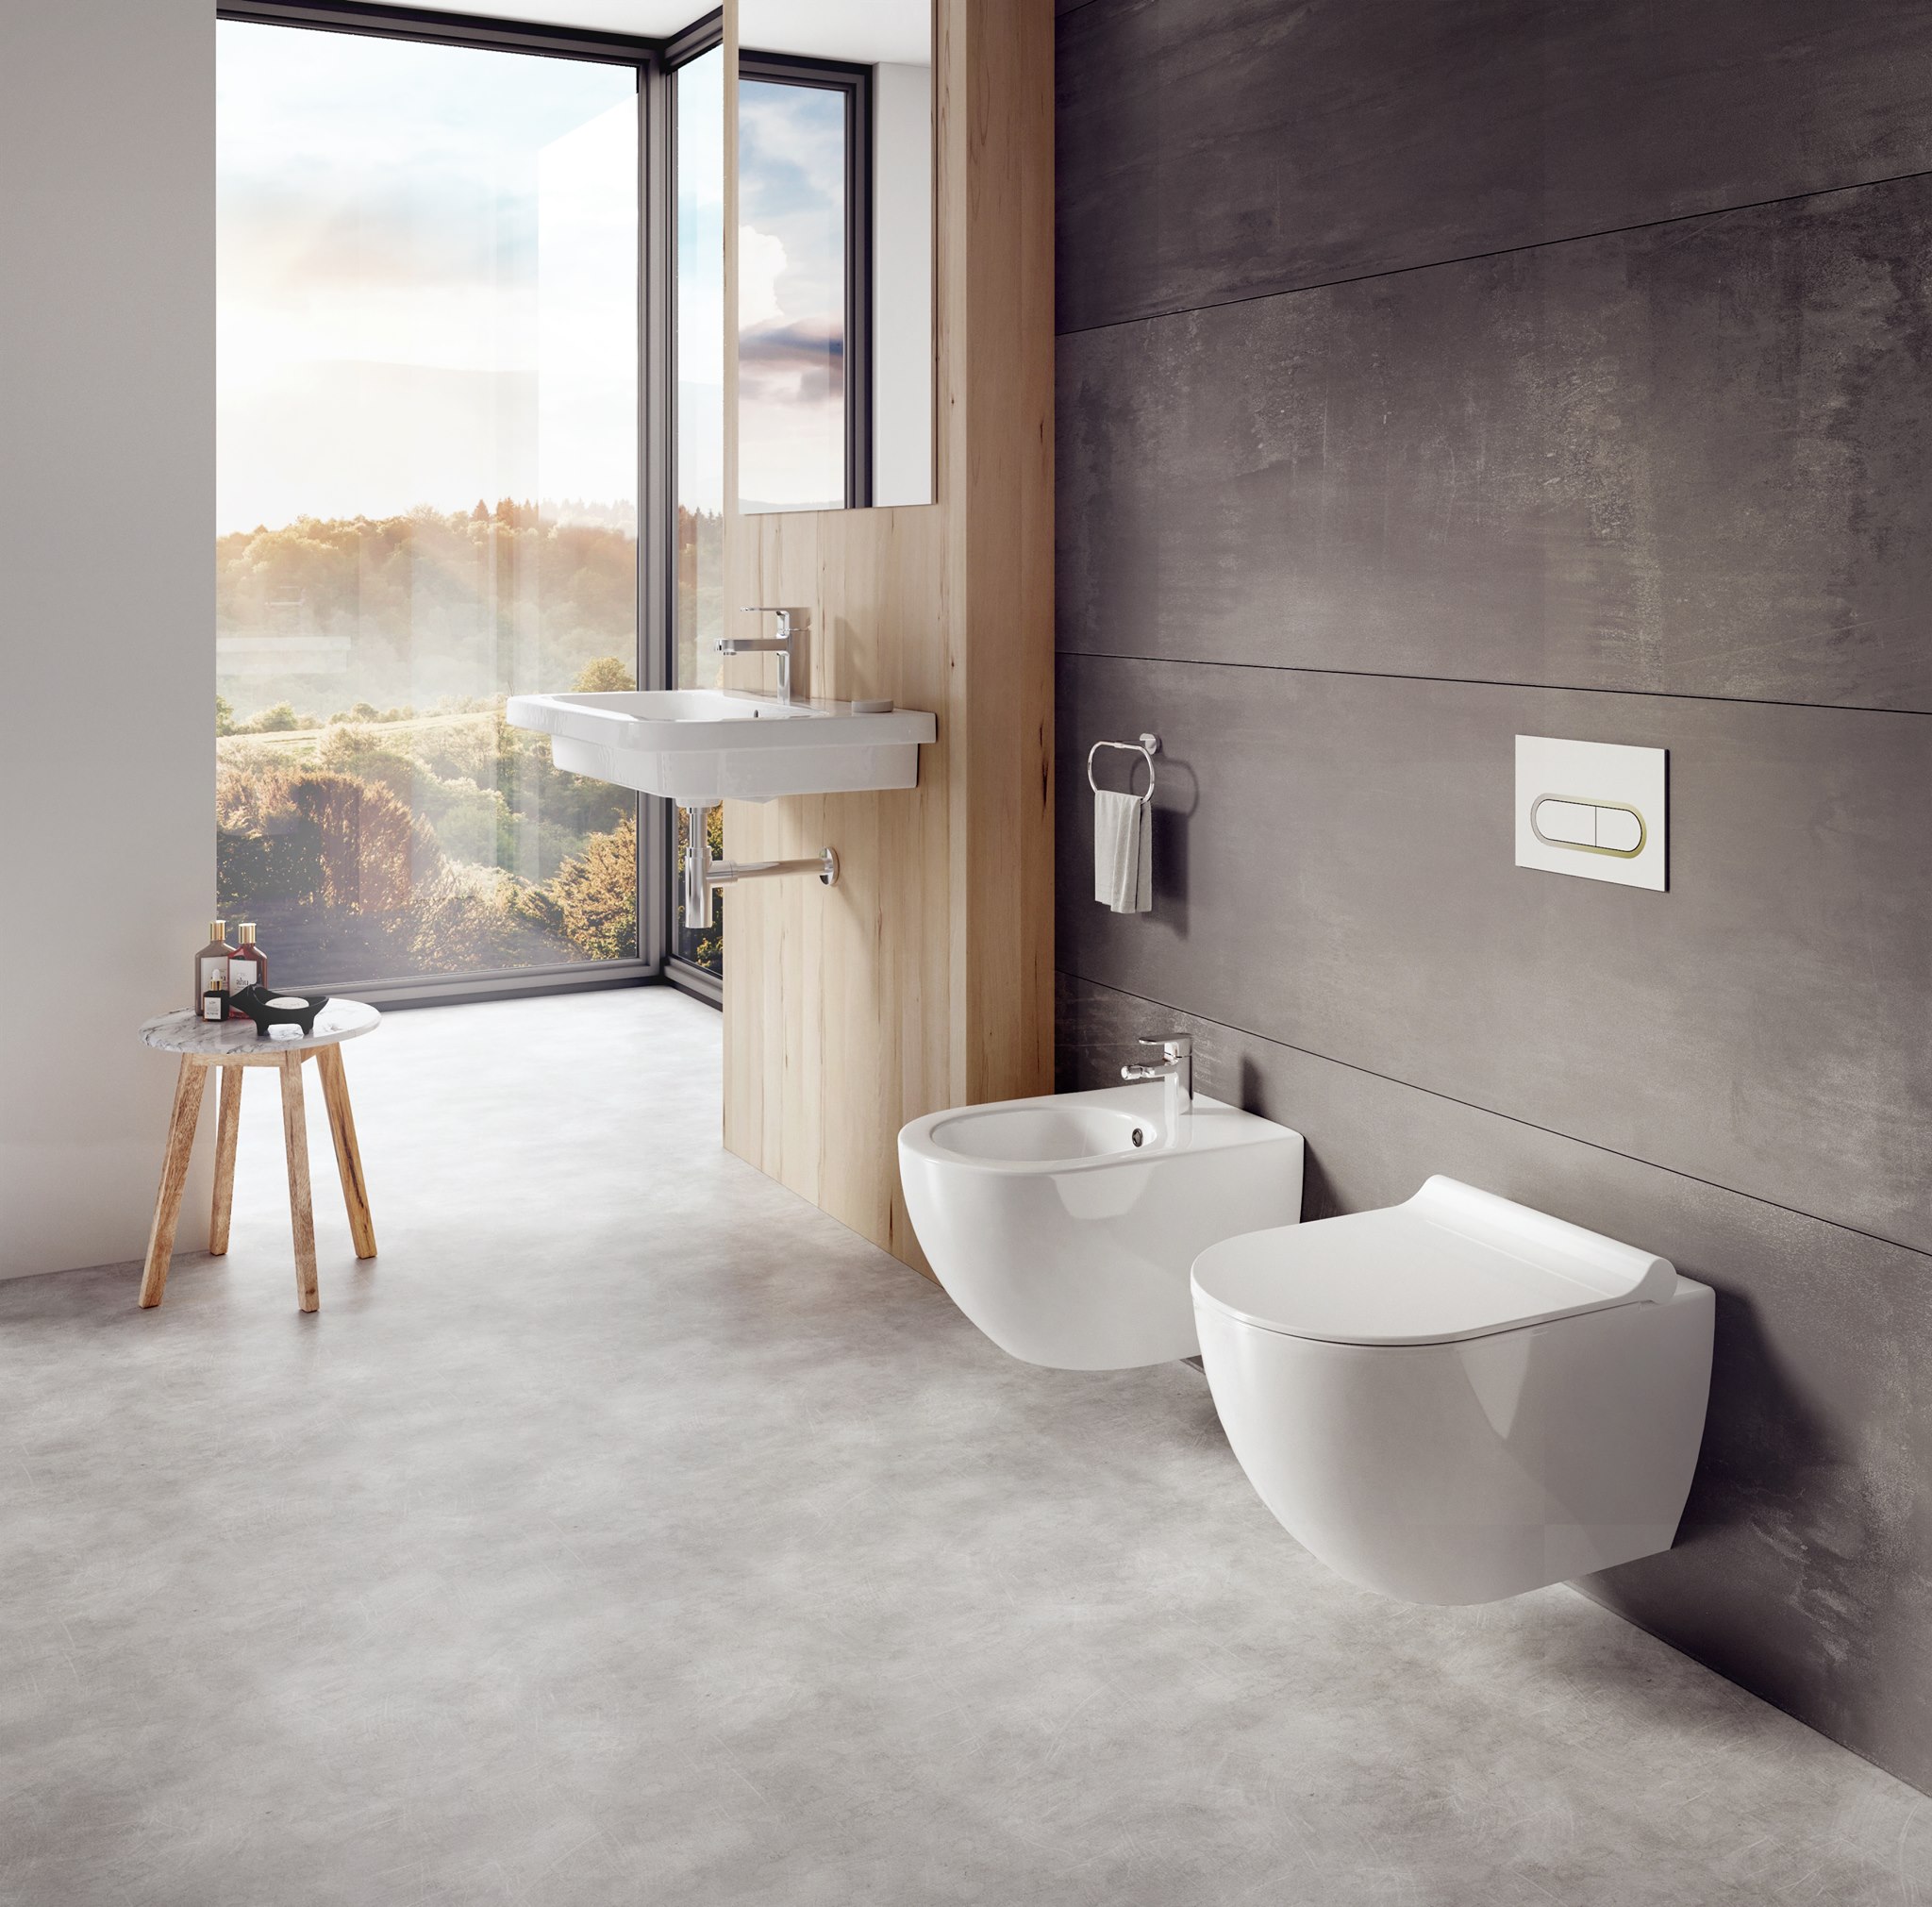 A stílus és hatékonyság jegyében készült, a legkisebb egységeiben is átgondolt fürdőszoba koncepció jellemzője a finom, ovális forma. Ez jellemző a wc-re és bidére is.